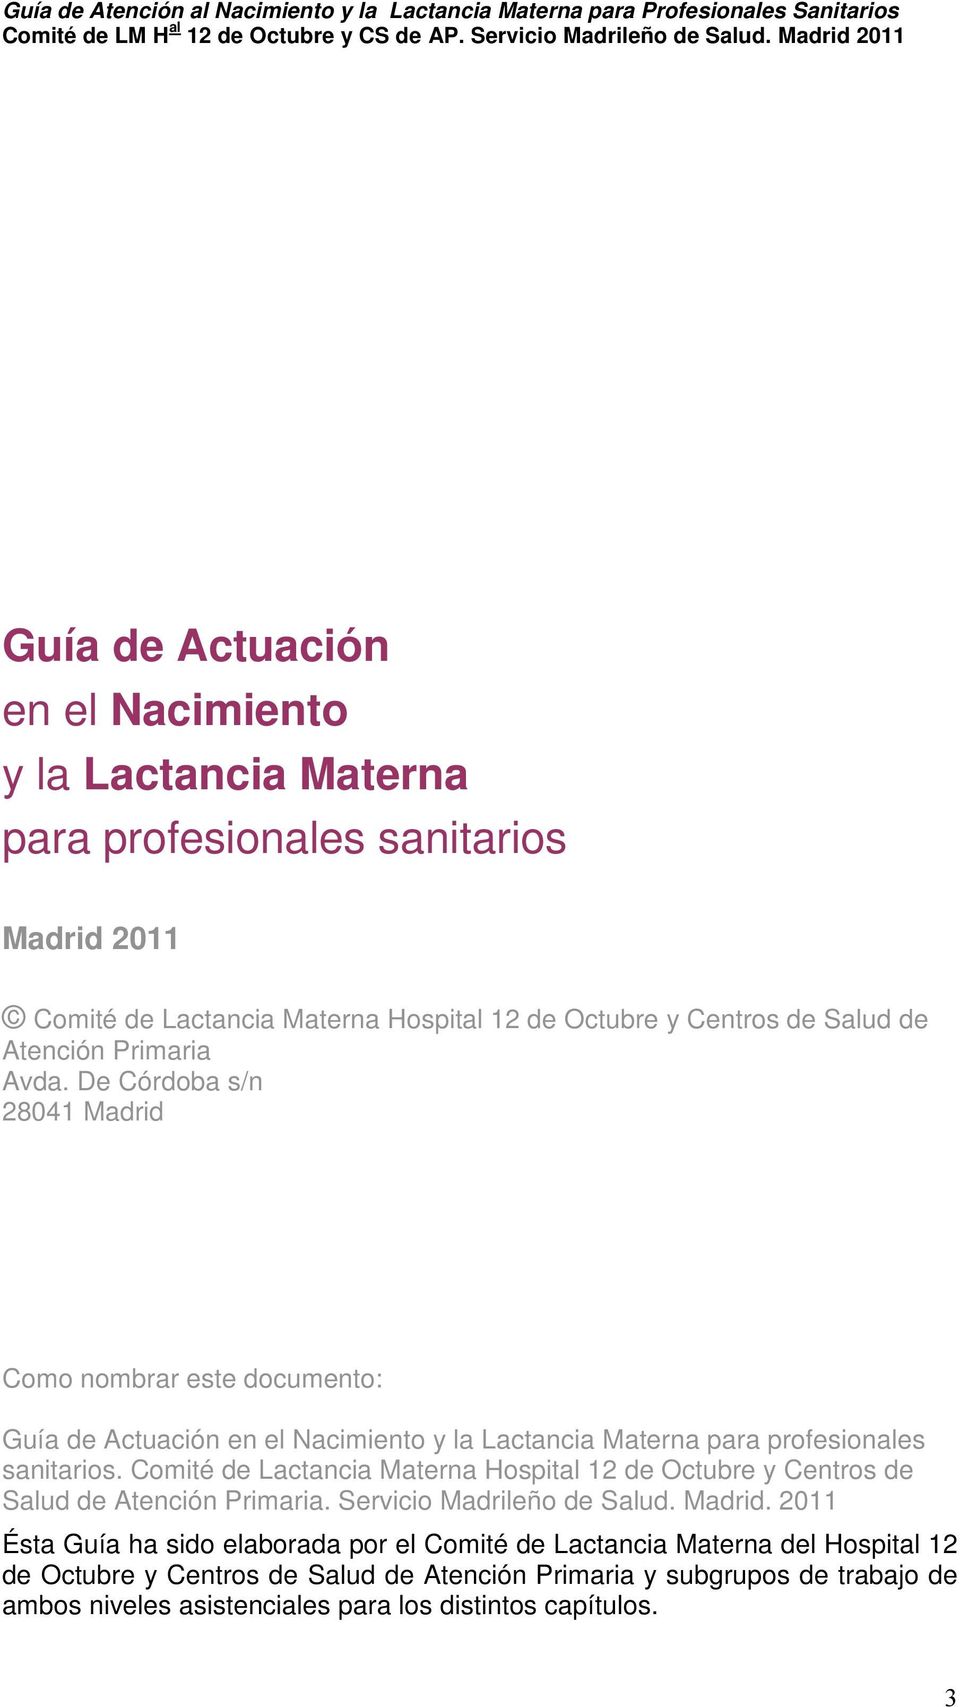 Comité de Lactancia Materna Hospital 12 de Octubre y Centros de Salud de Atención Primaria. Servicio Madrileño de Salud. Madrid.